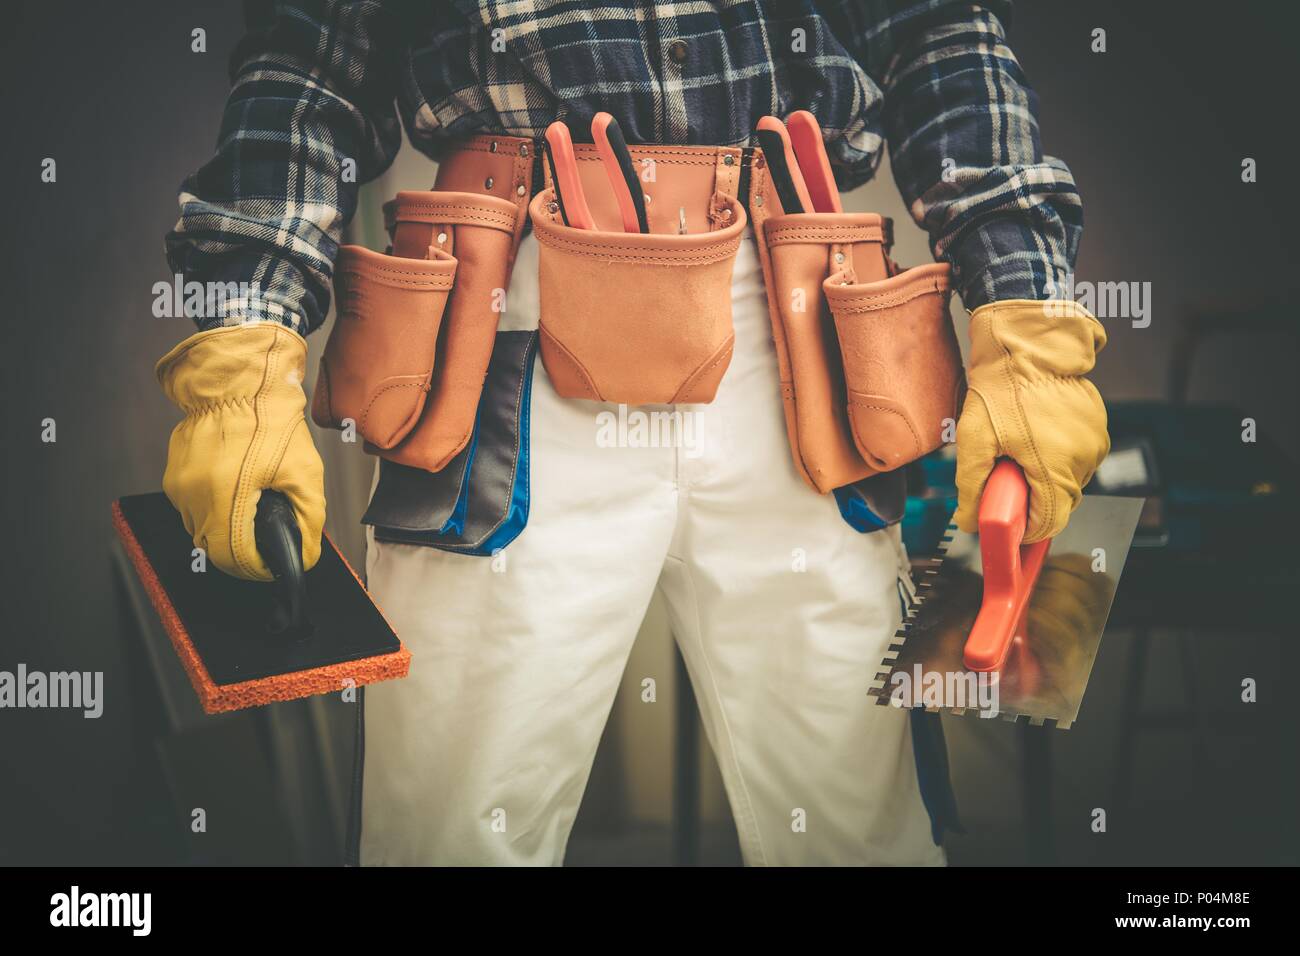 Bauunternehmen auf Aufgabe Konzept Foto. Arbeitnehmer mit großen Werkzeugen Riemen und einige Werkzeuge in den Händen. Stockfoto